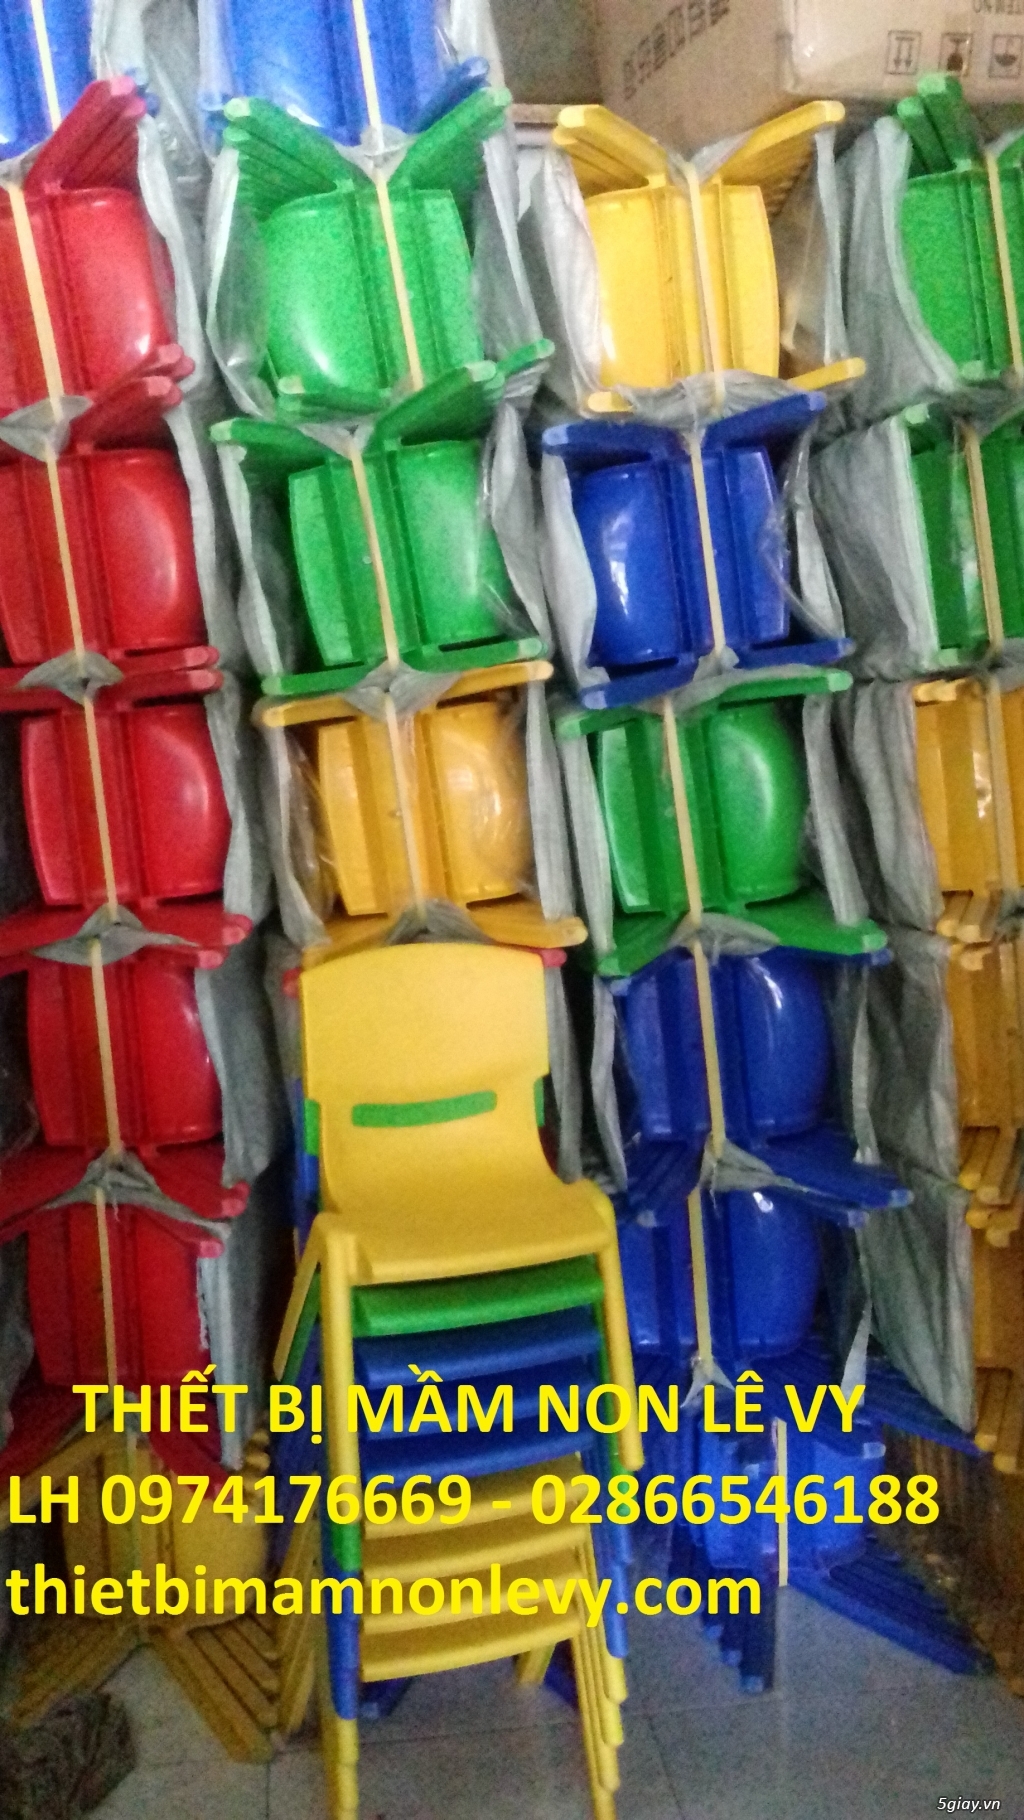 Ghế nhựa dành cho trẻ em mầm non/đồ chơi trẻ em/đồ chơi mẫu giáo - 1